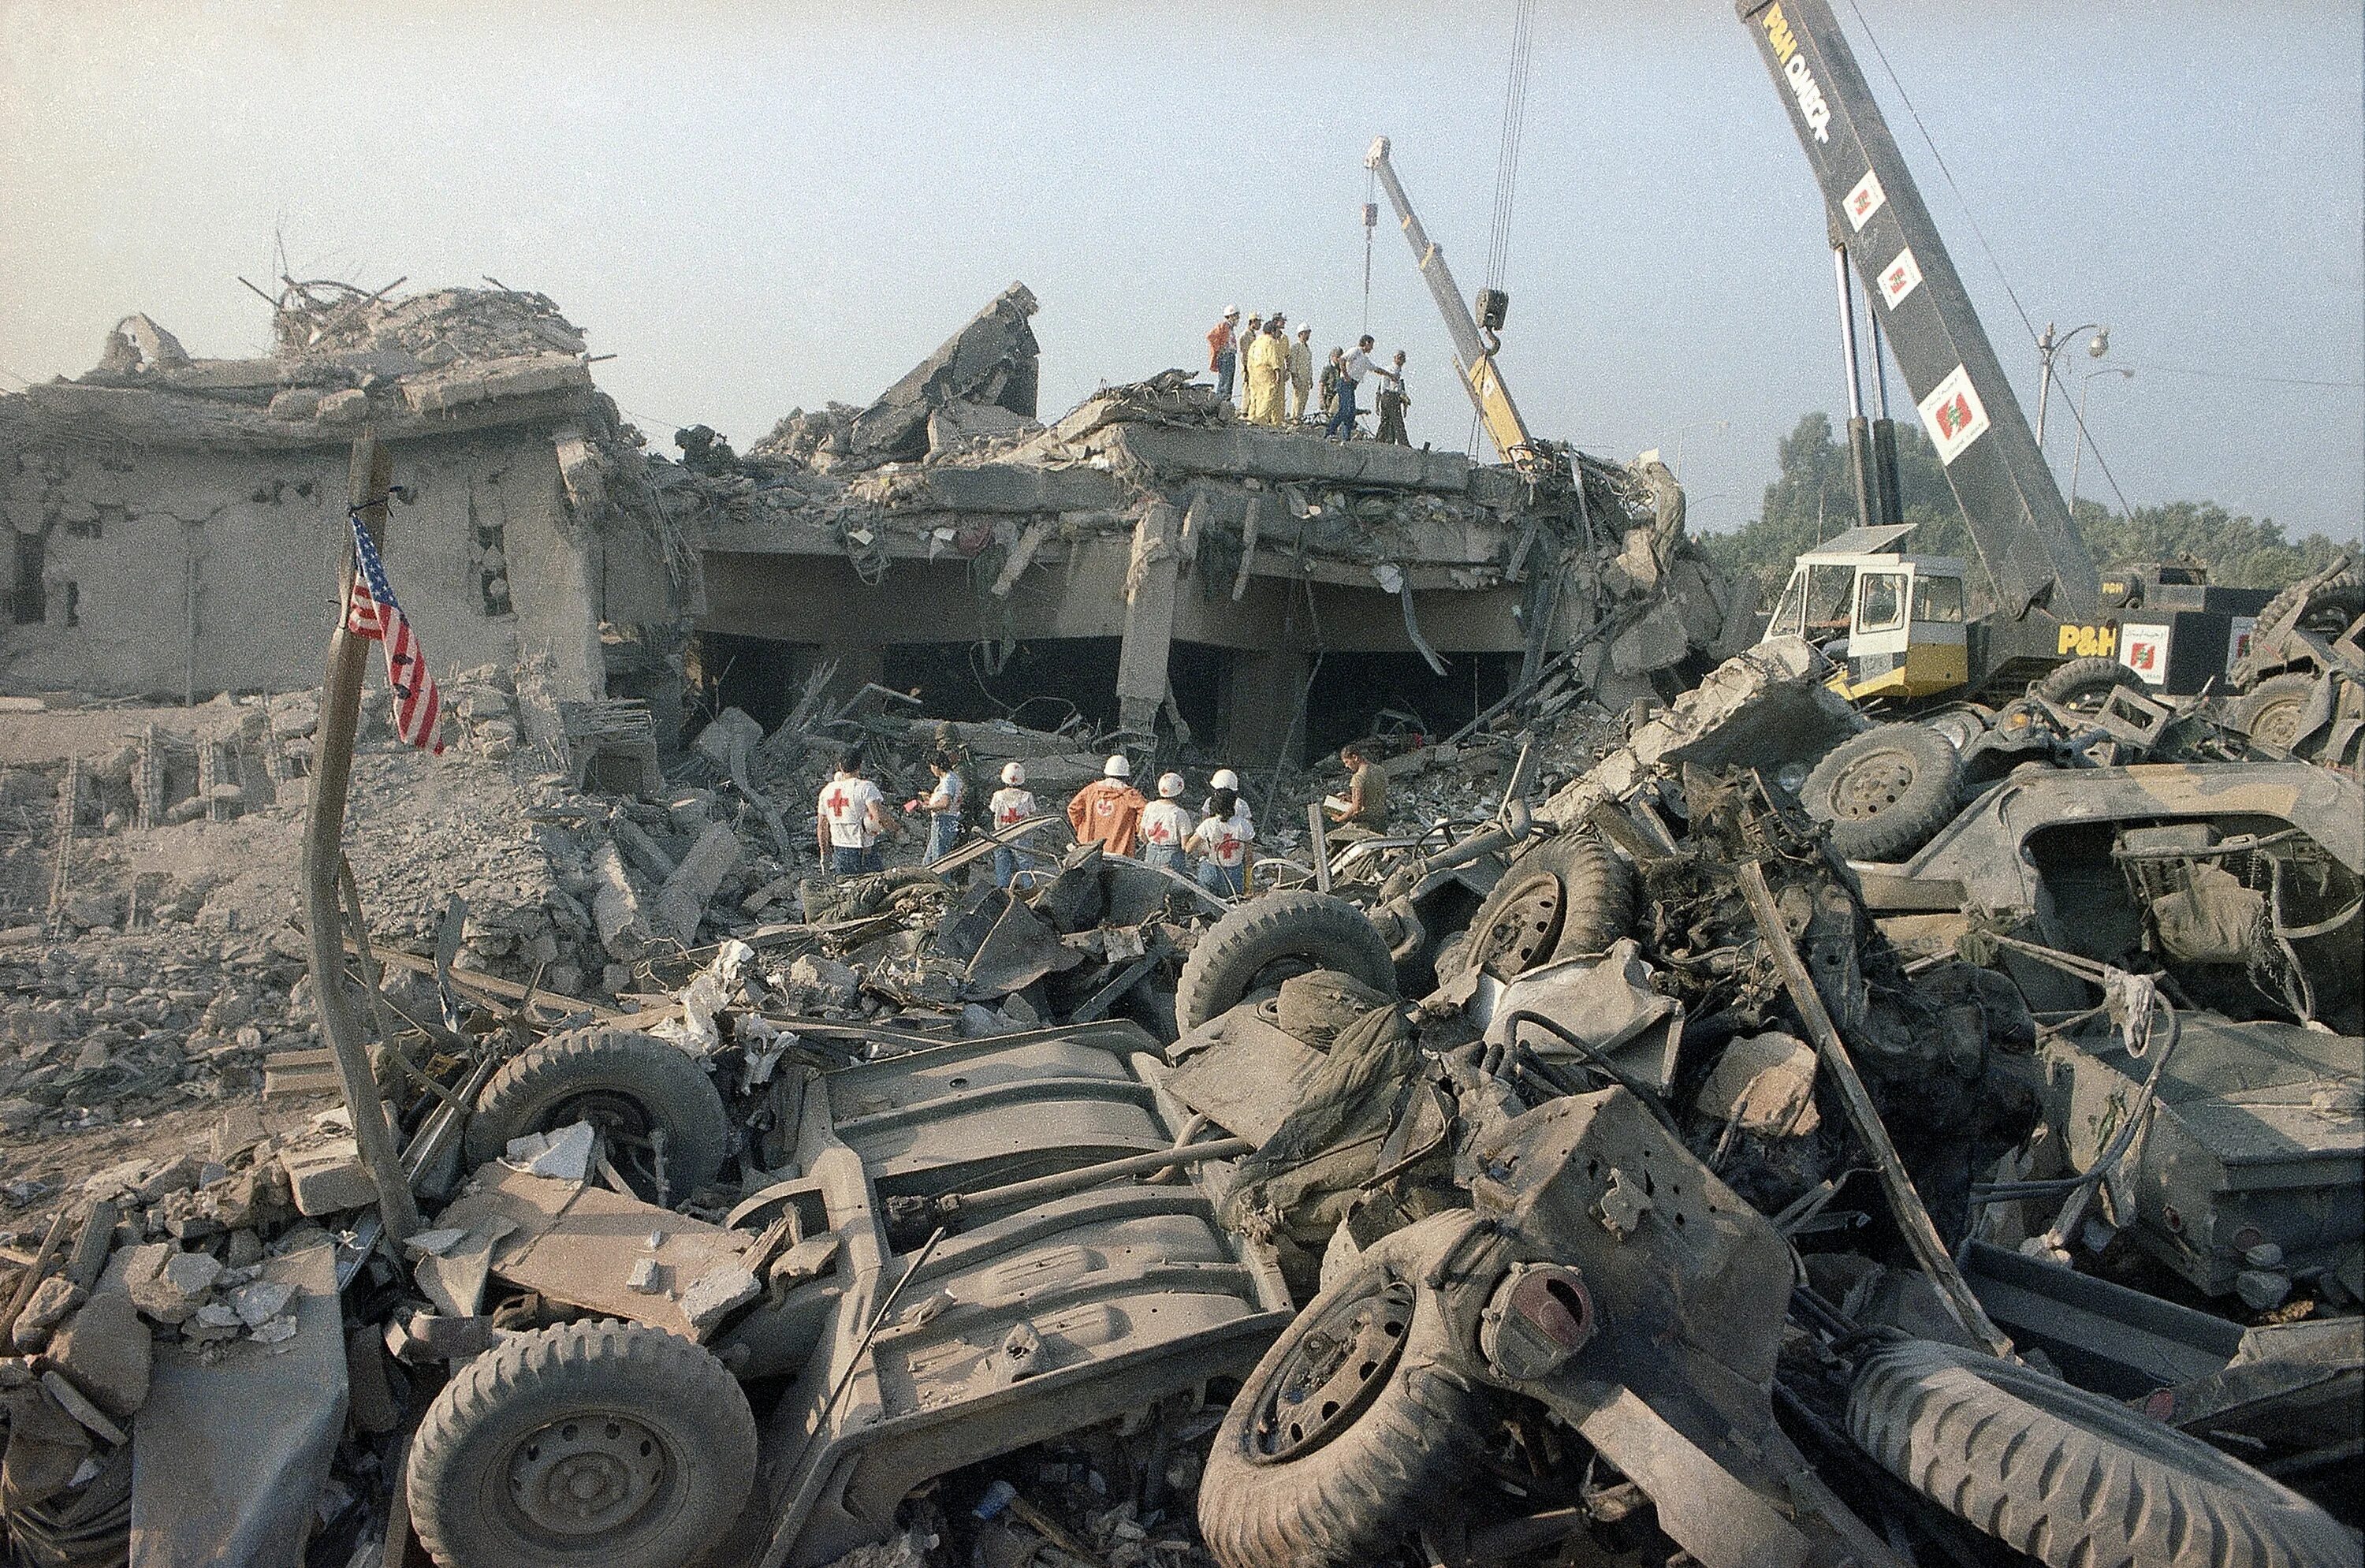 23 октября 2001 года. Взрывы казарм миротворцев в Бейруте 1983. 23 Октября 1983 года в Бейруте.